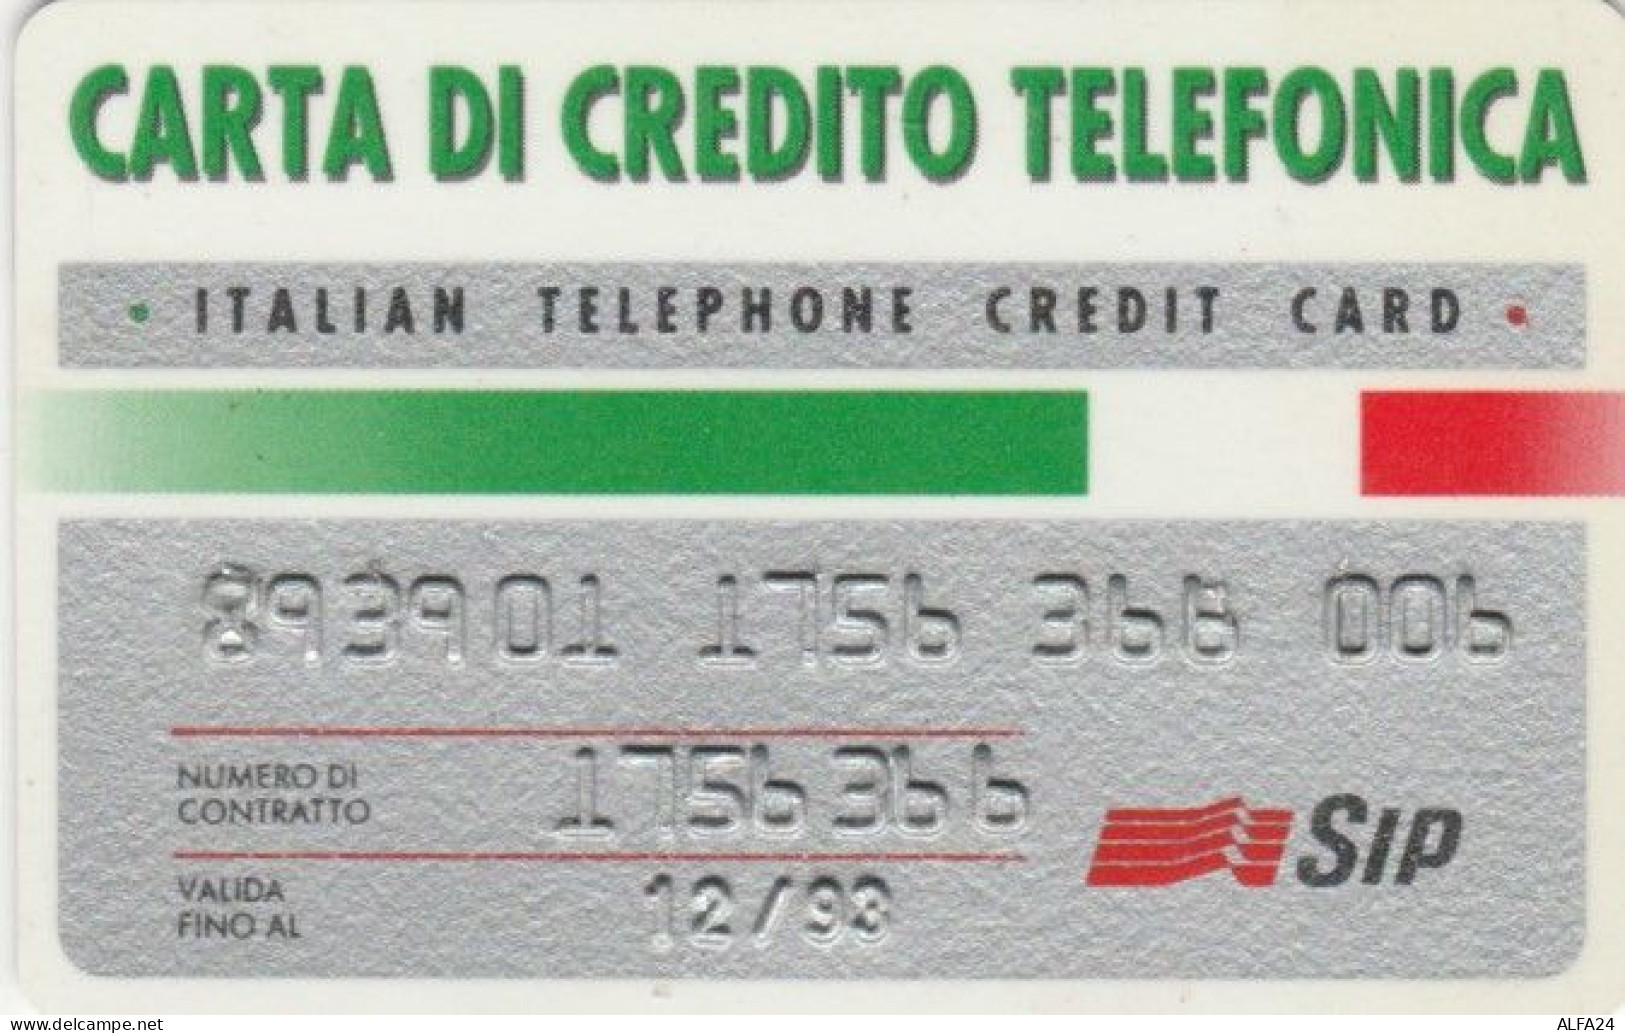 CARTA DI CREDITO TELEFONICA 12/93 (PY1648 - Usi Speciali